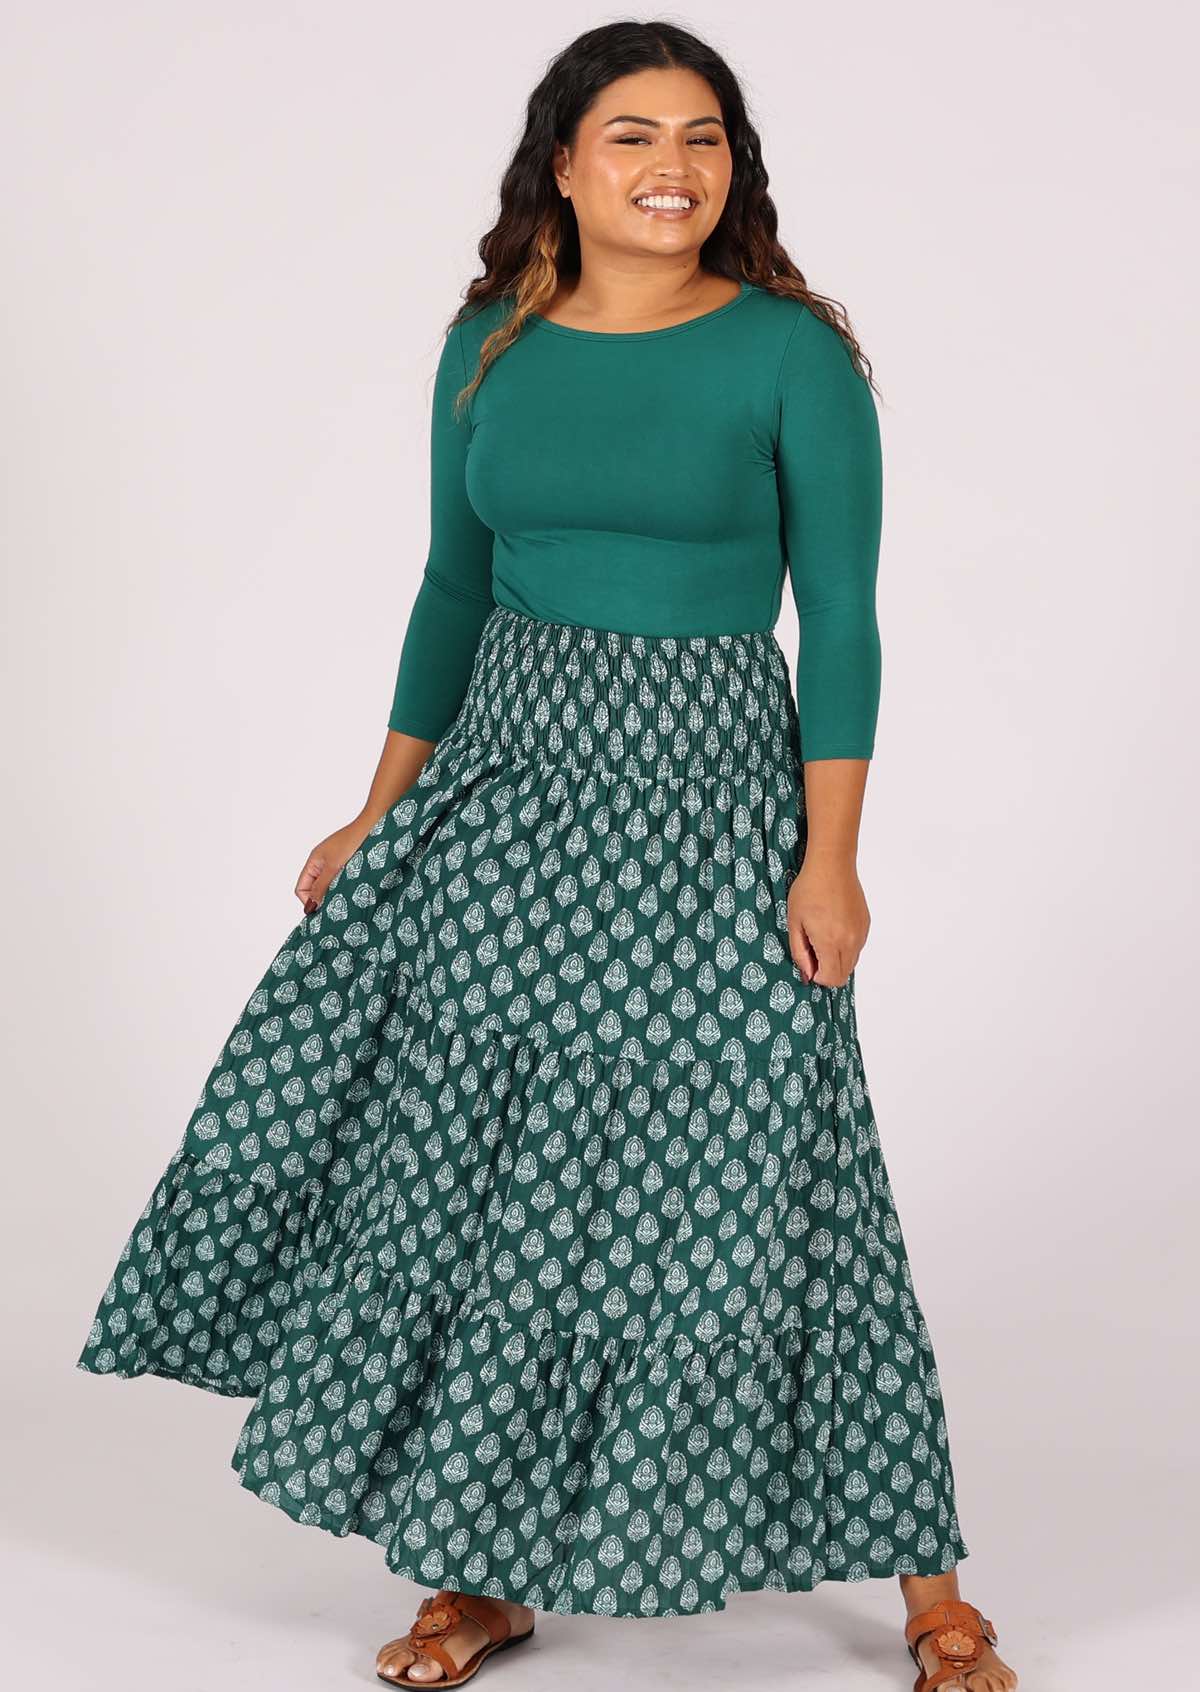 Voluminous lightweight cotton maxi skirt in gorgeous green